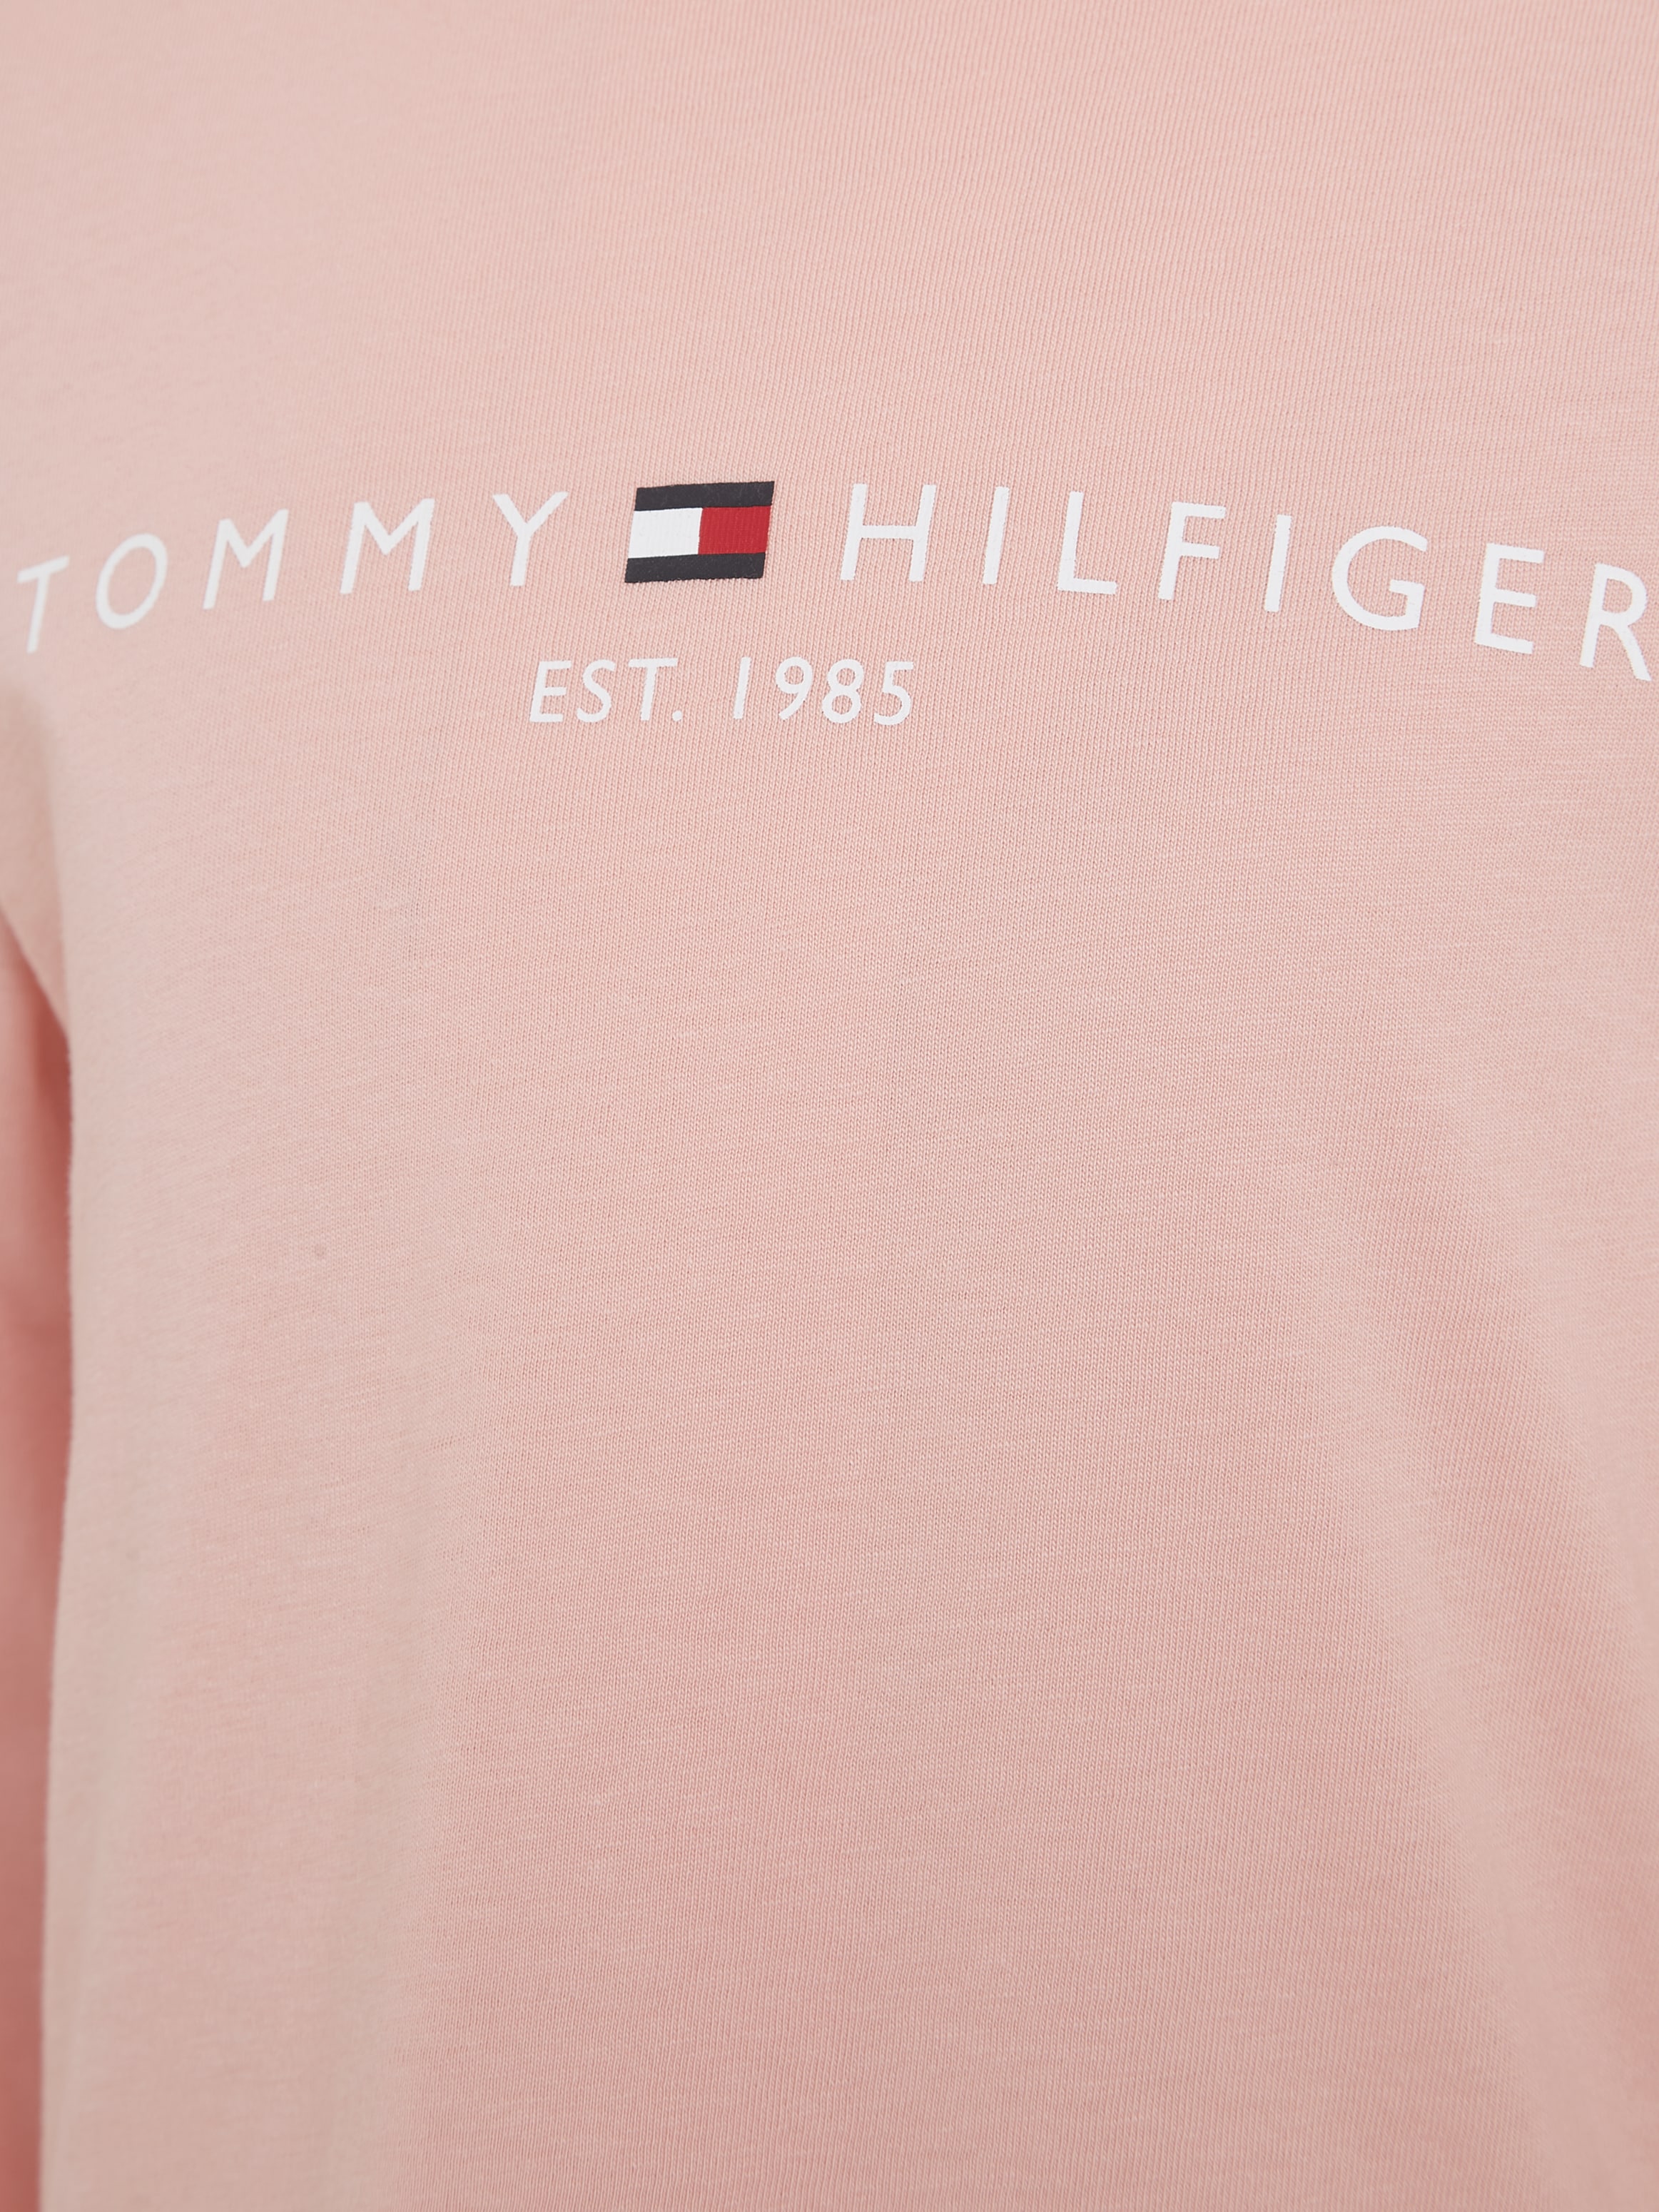 Tommy Hilfiger Langarmshirt »ESSENTIAL TEE L/S«, mit Tommy Hilfiger Logo-Schriftzug